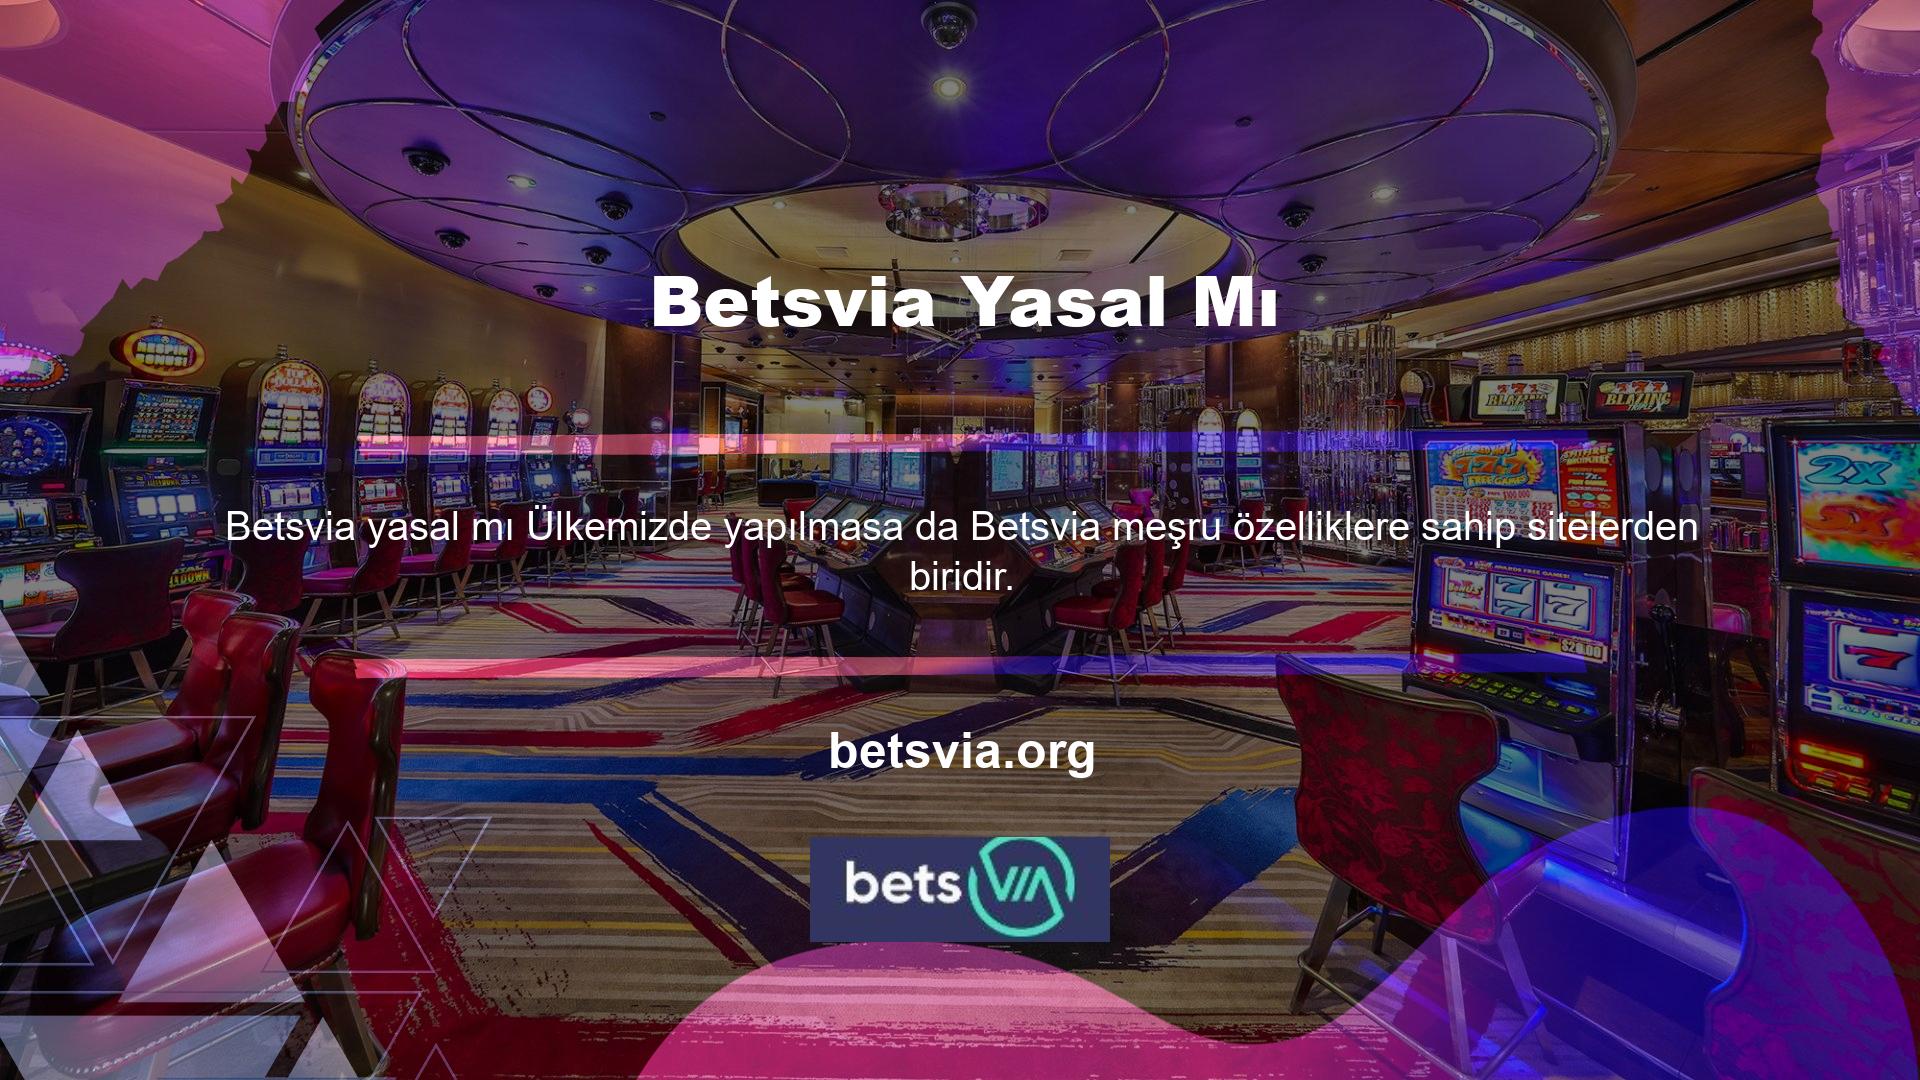 Betsvia, üyelerinden saygın ve meşru web sitelerinden gelen açıklamaları ifşa etmelerini talep etmez